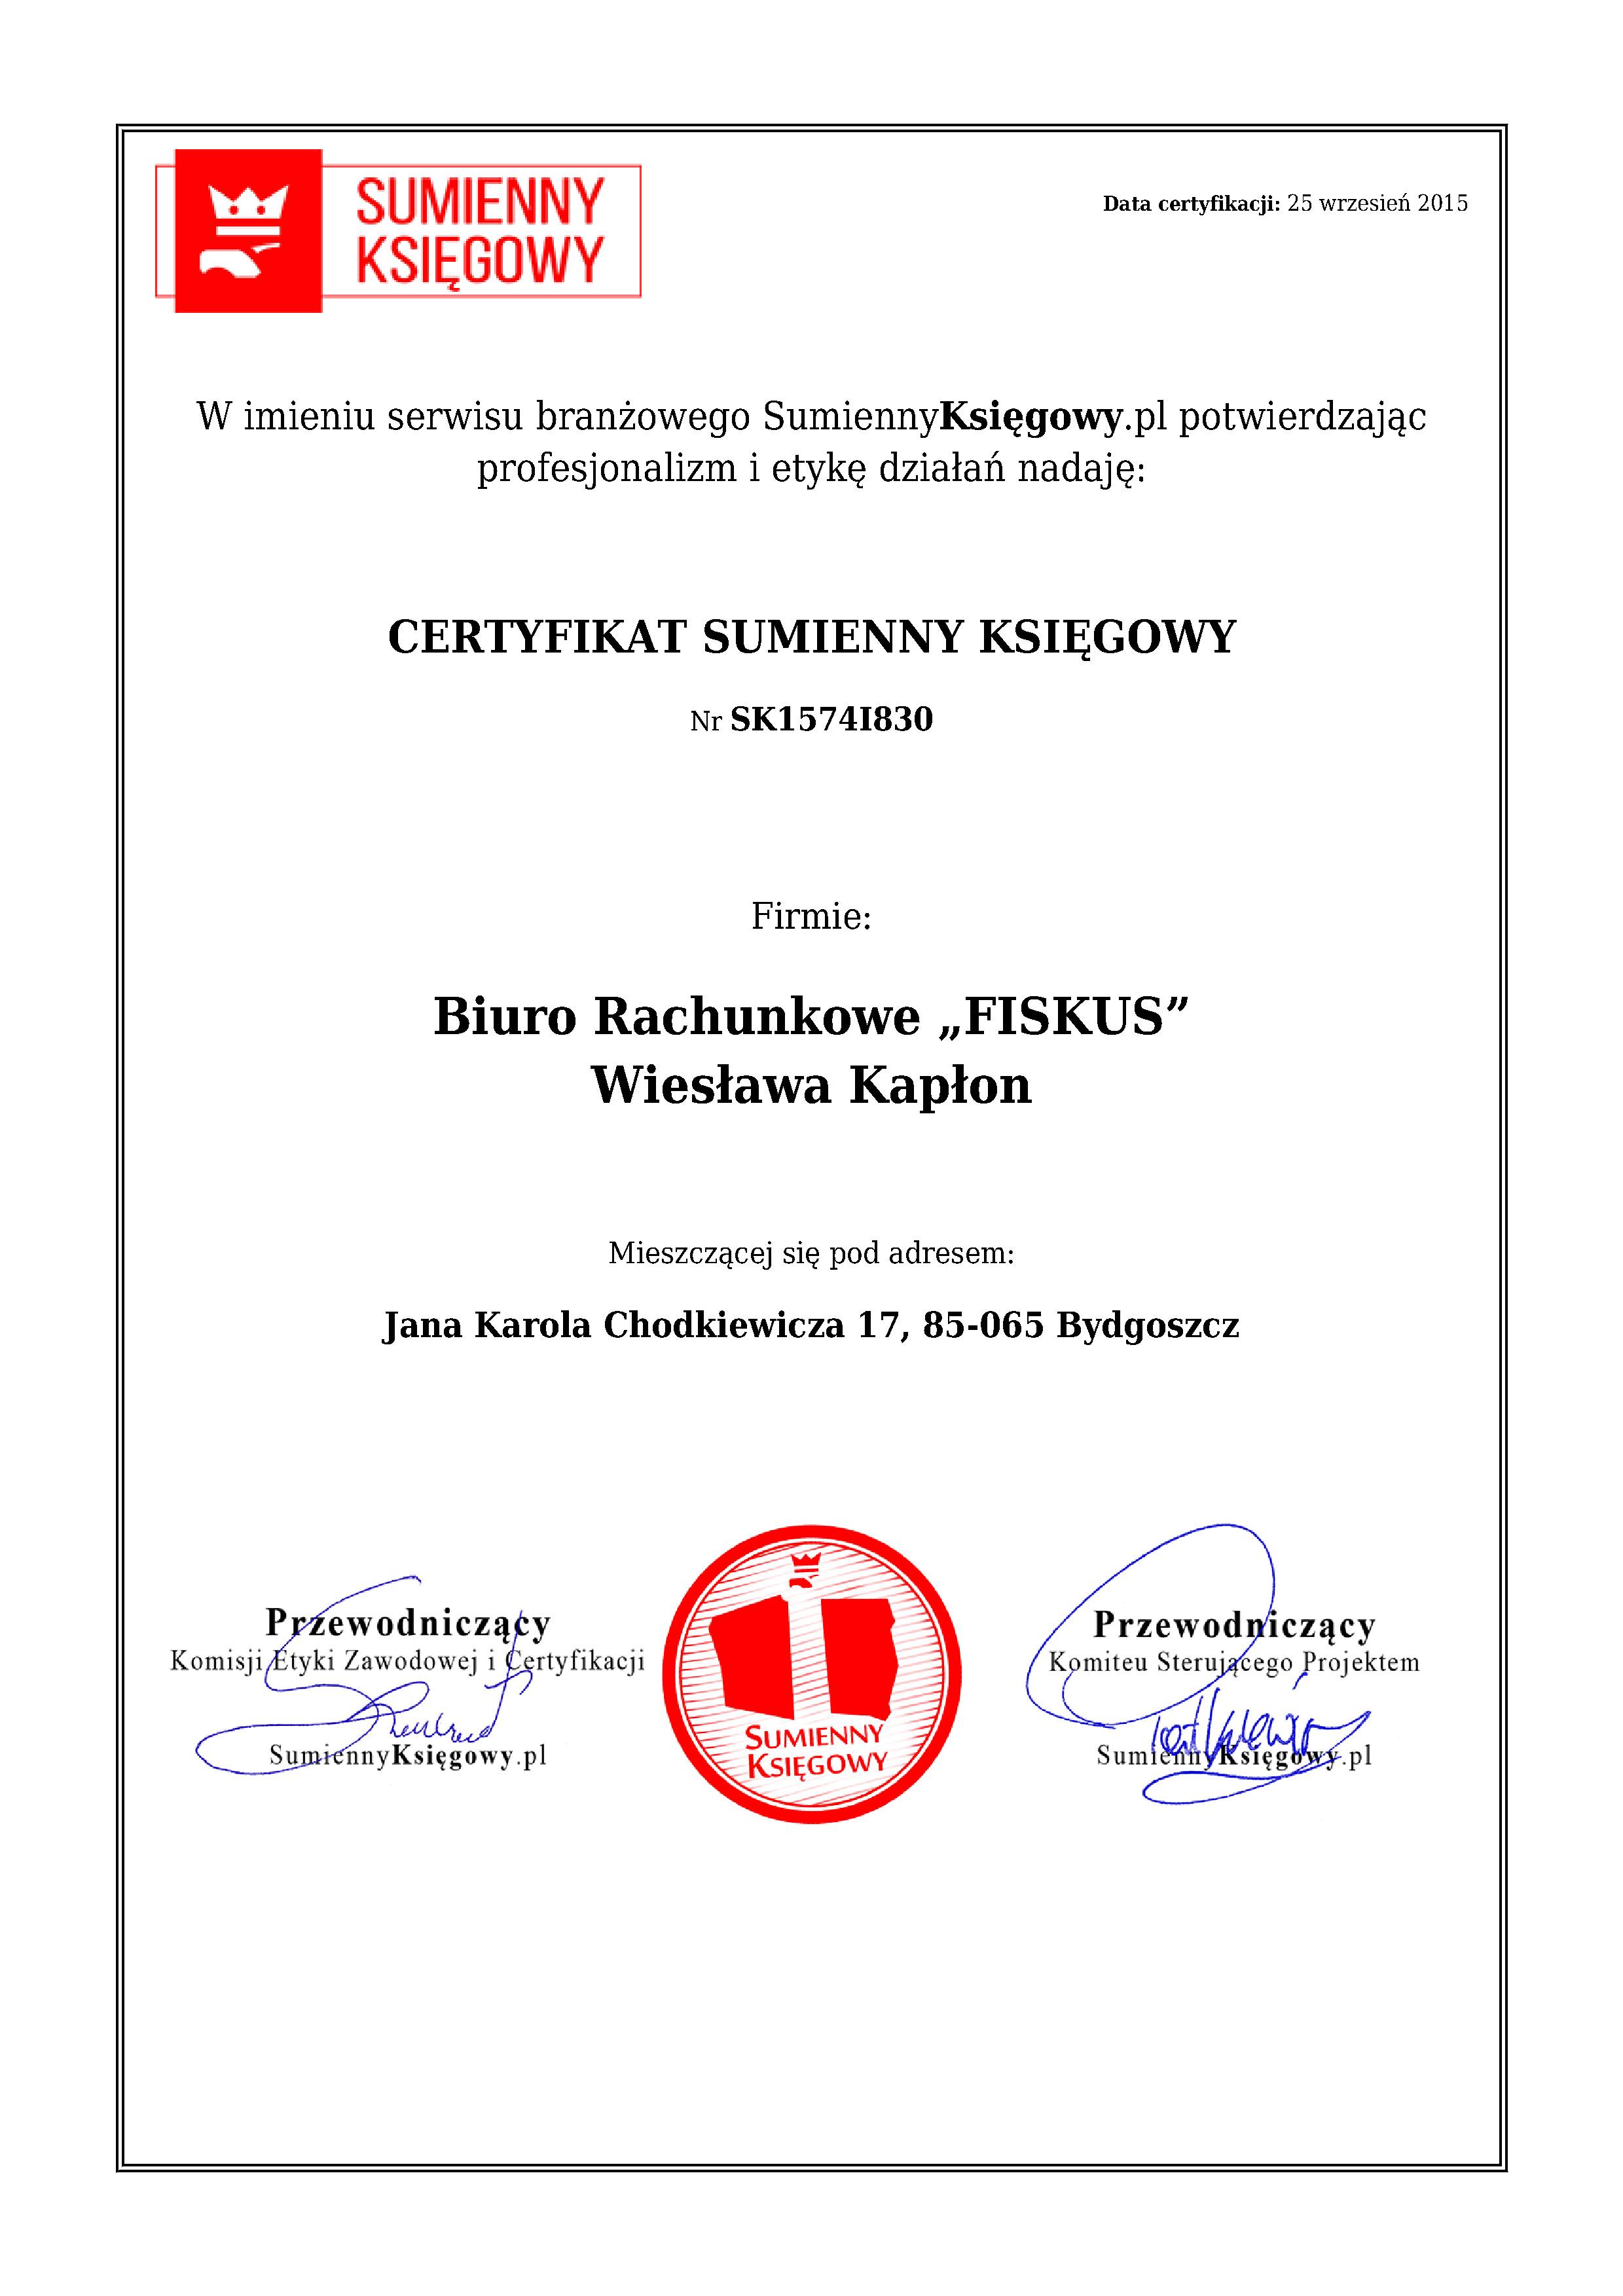 Certyfikat Biuro Rachunkowe „FISKUS” Wiesława Kapłon